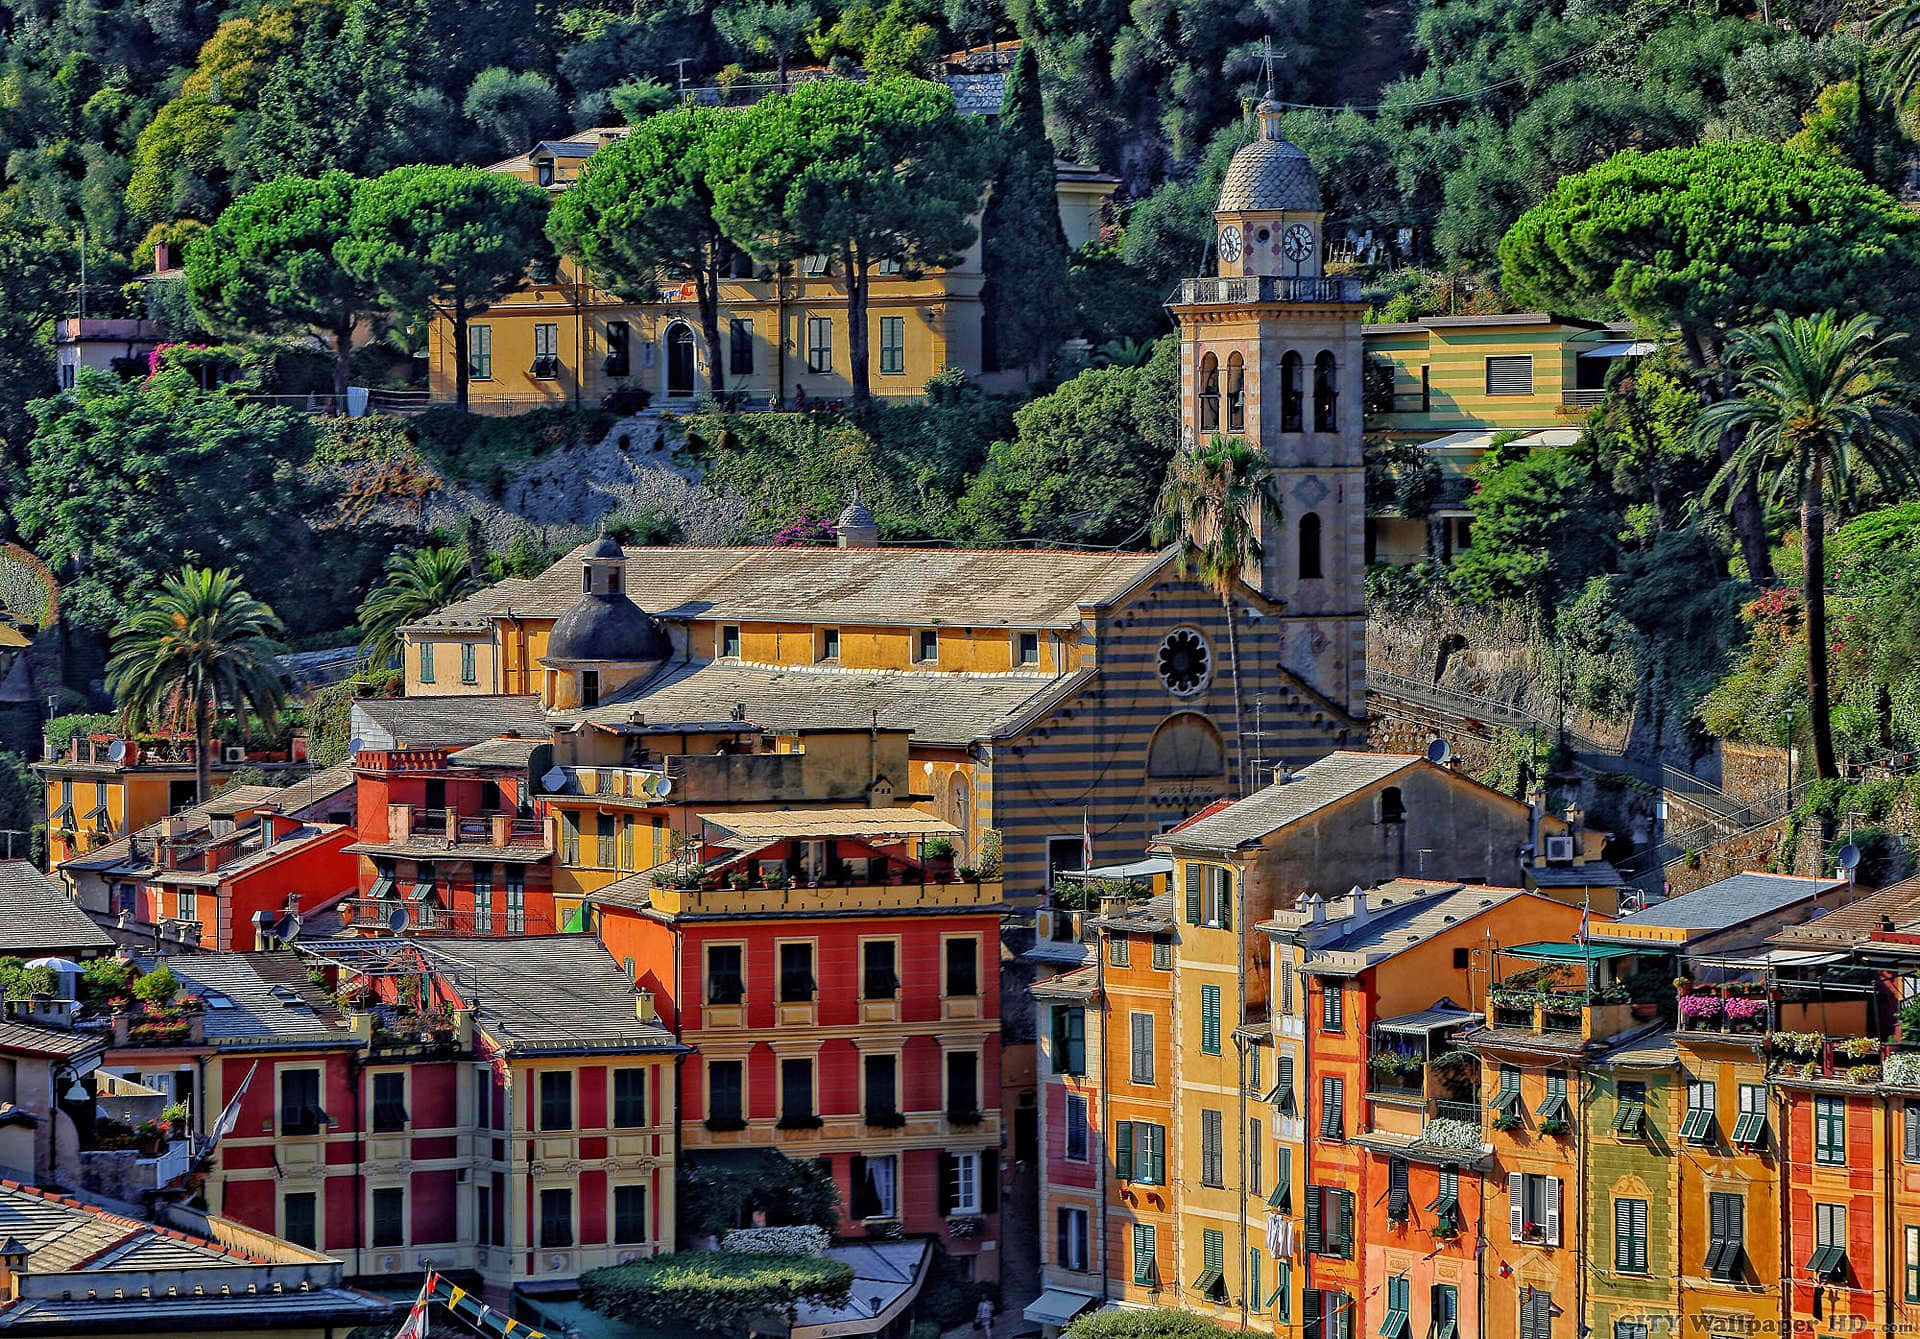 Chiesadel Divo Martino Und Häuser In Portofino Wallpaper